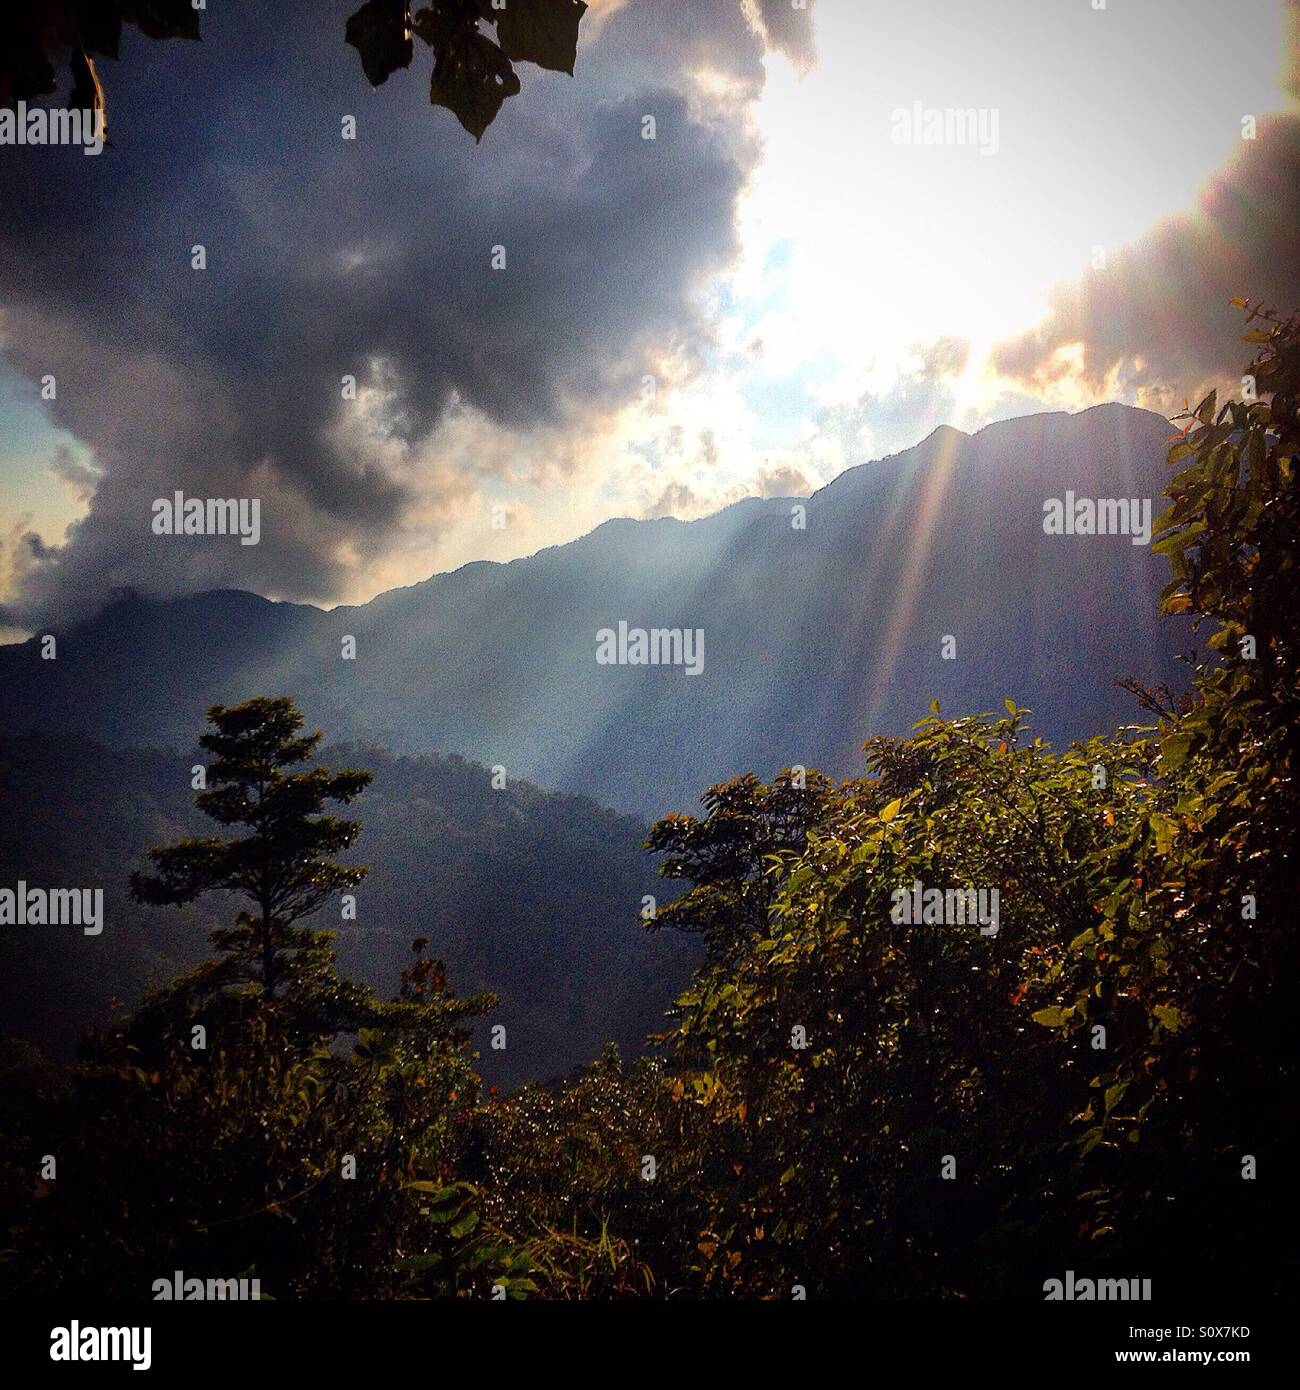 The Sun shines over the Cerro del Venado mountain in El Triunfo Biosphere Reserve, Chiapas, Mexico Stock Photo